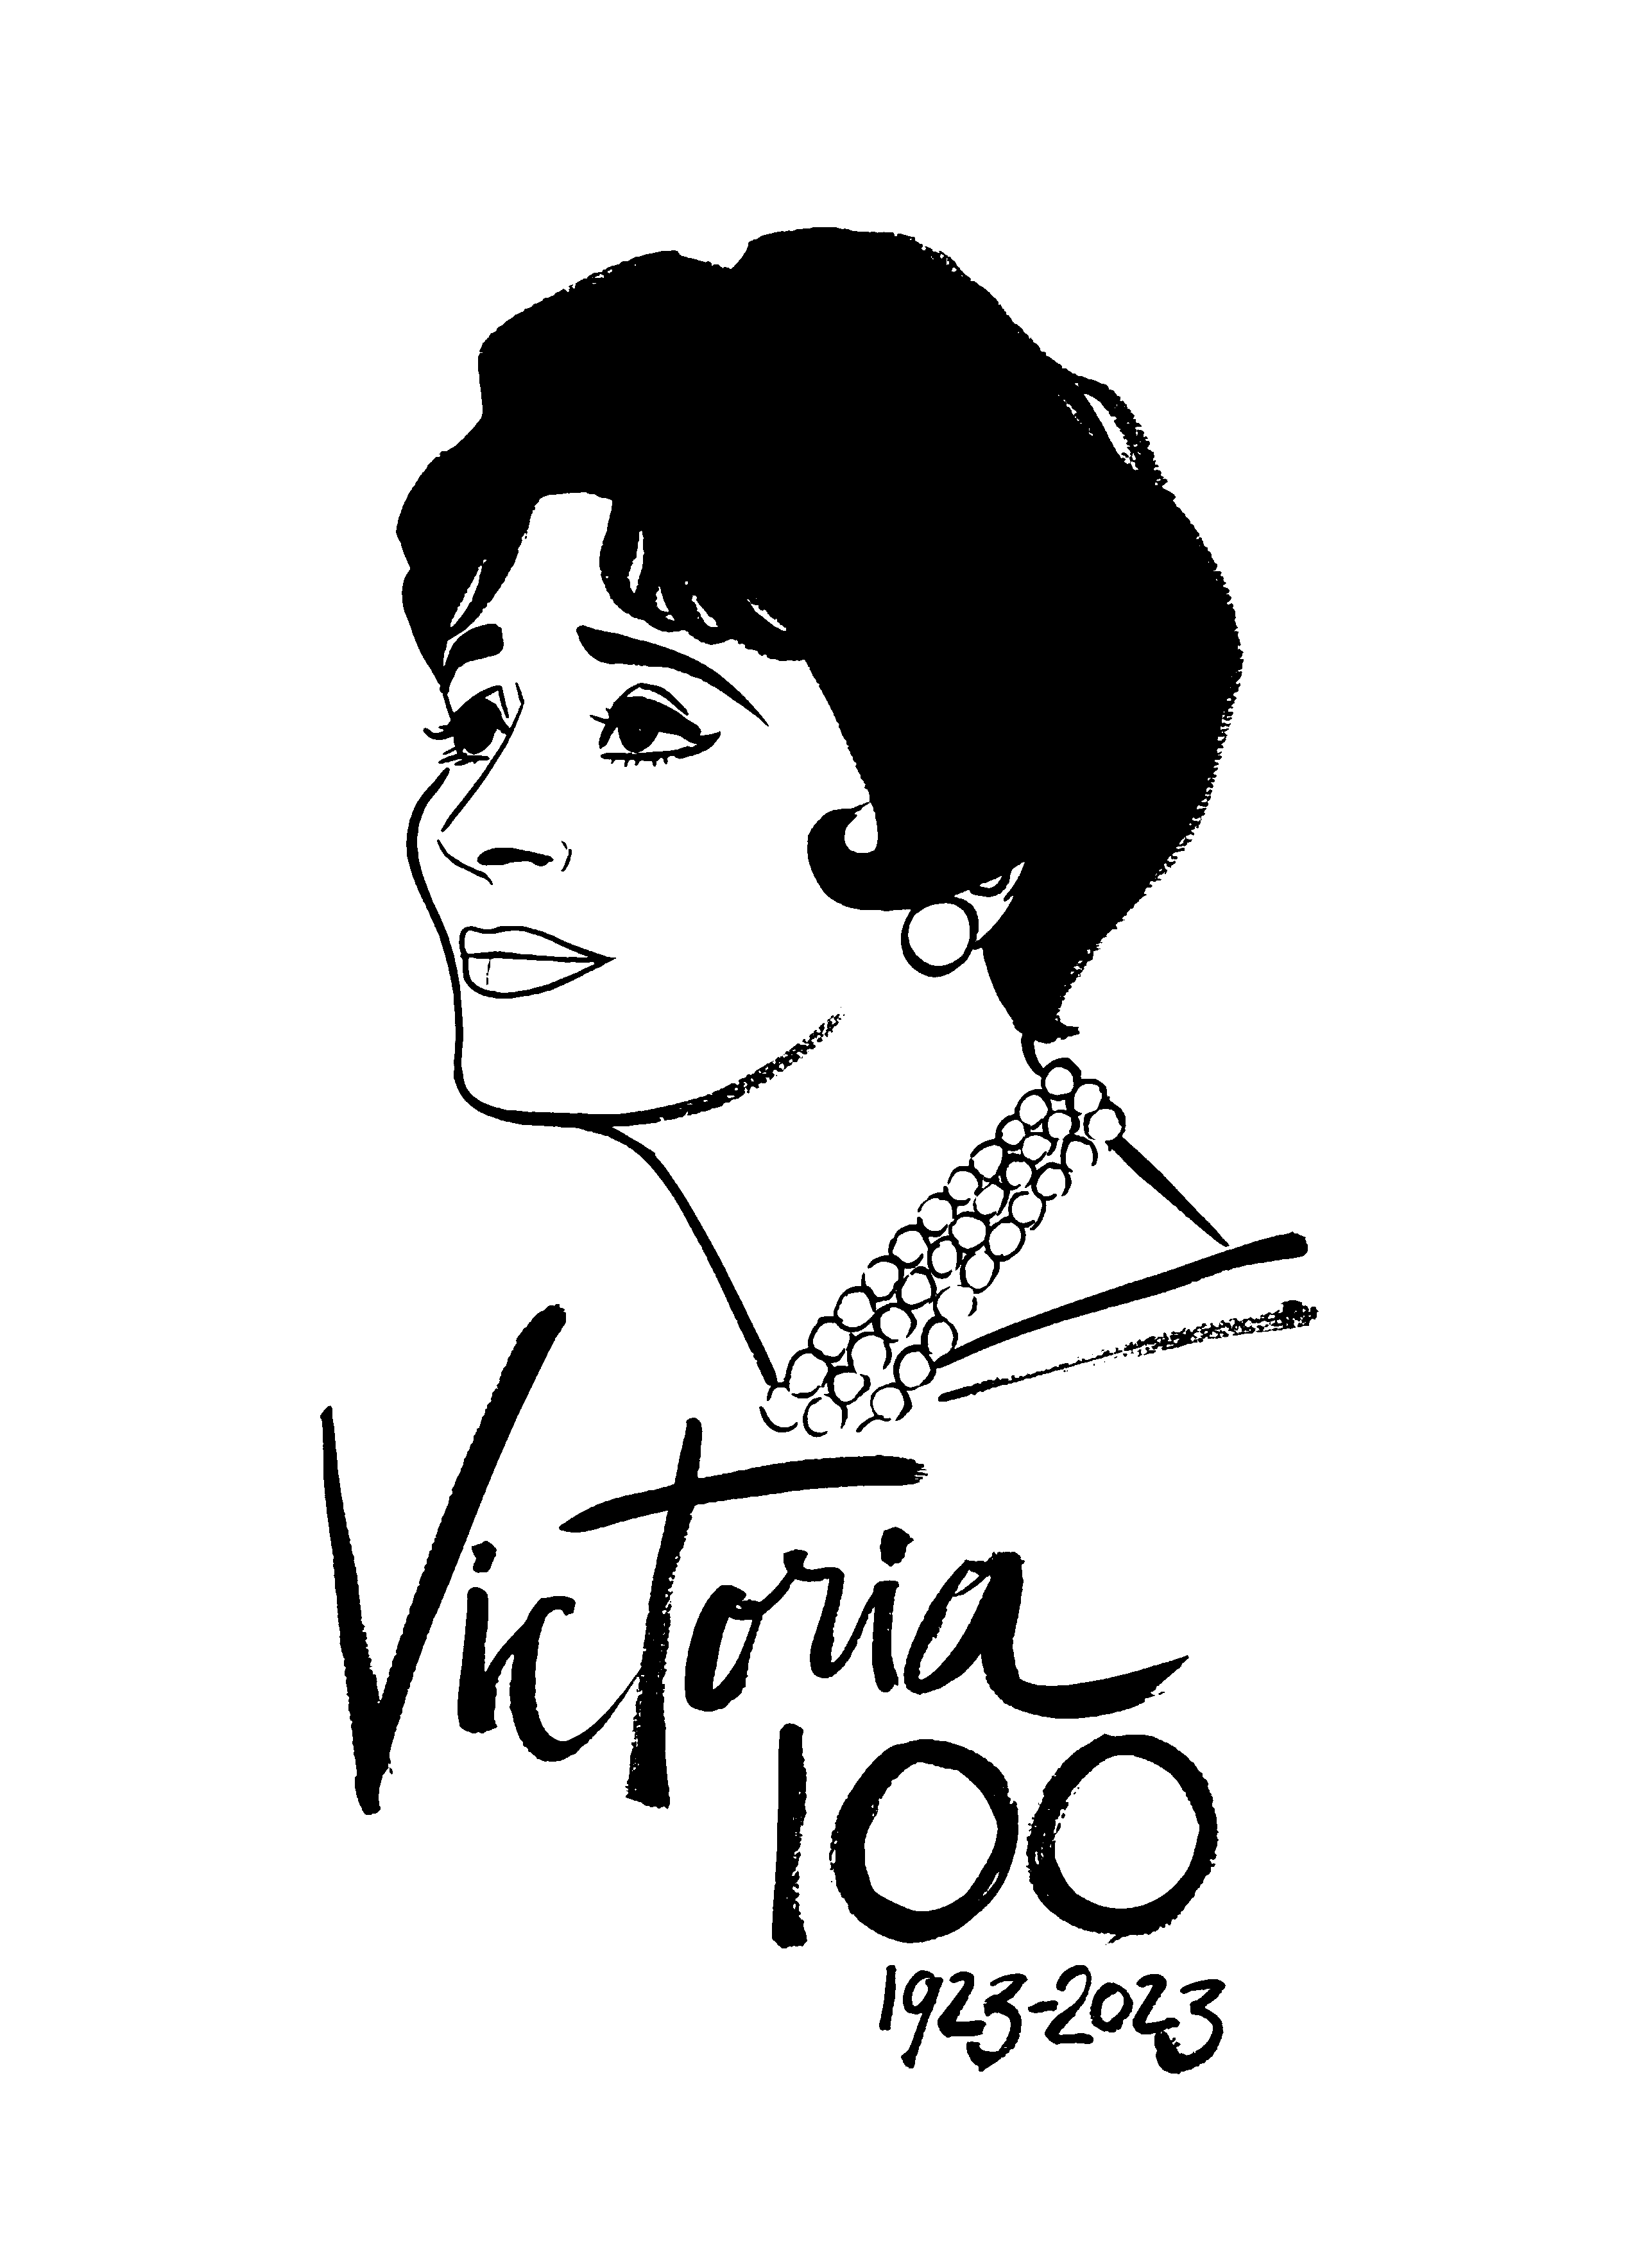 Victoria 100